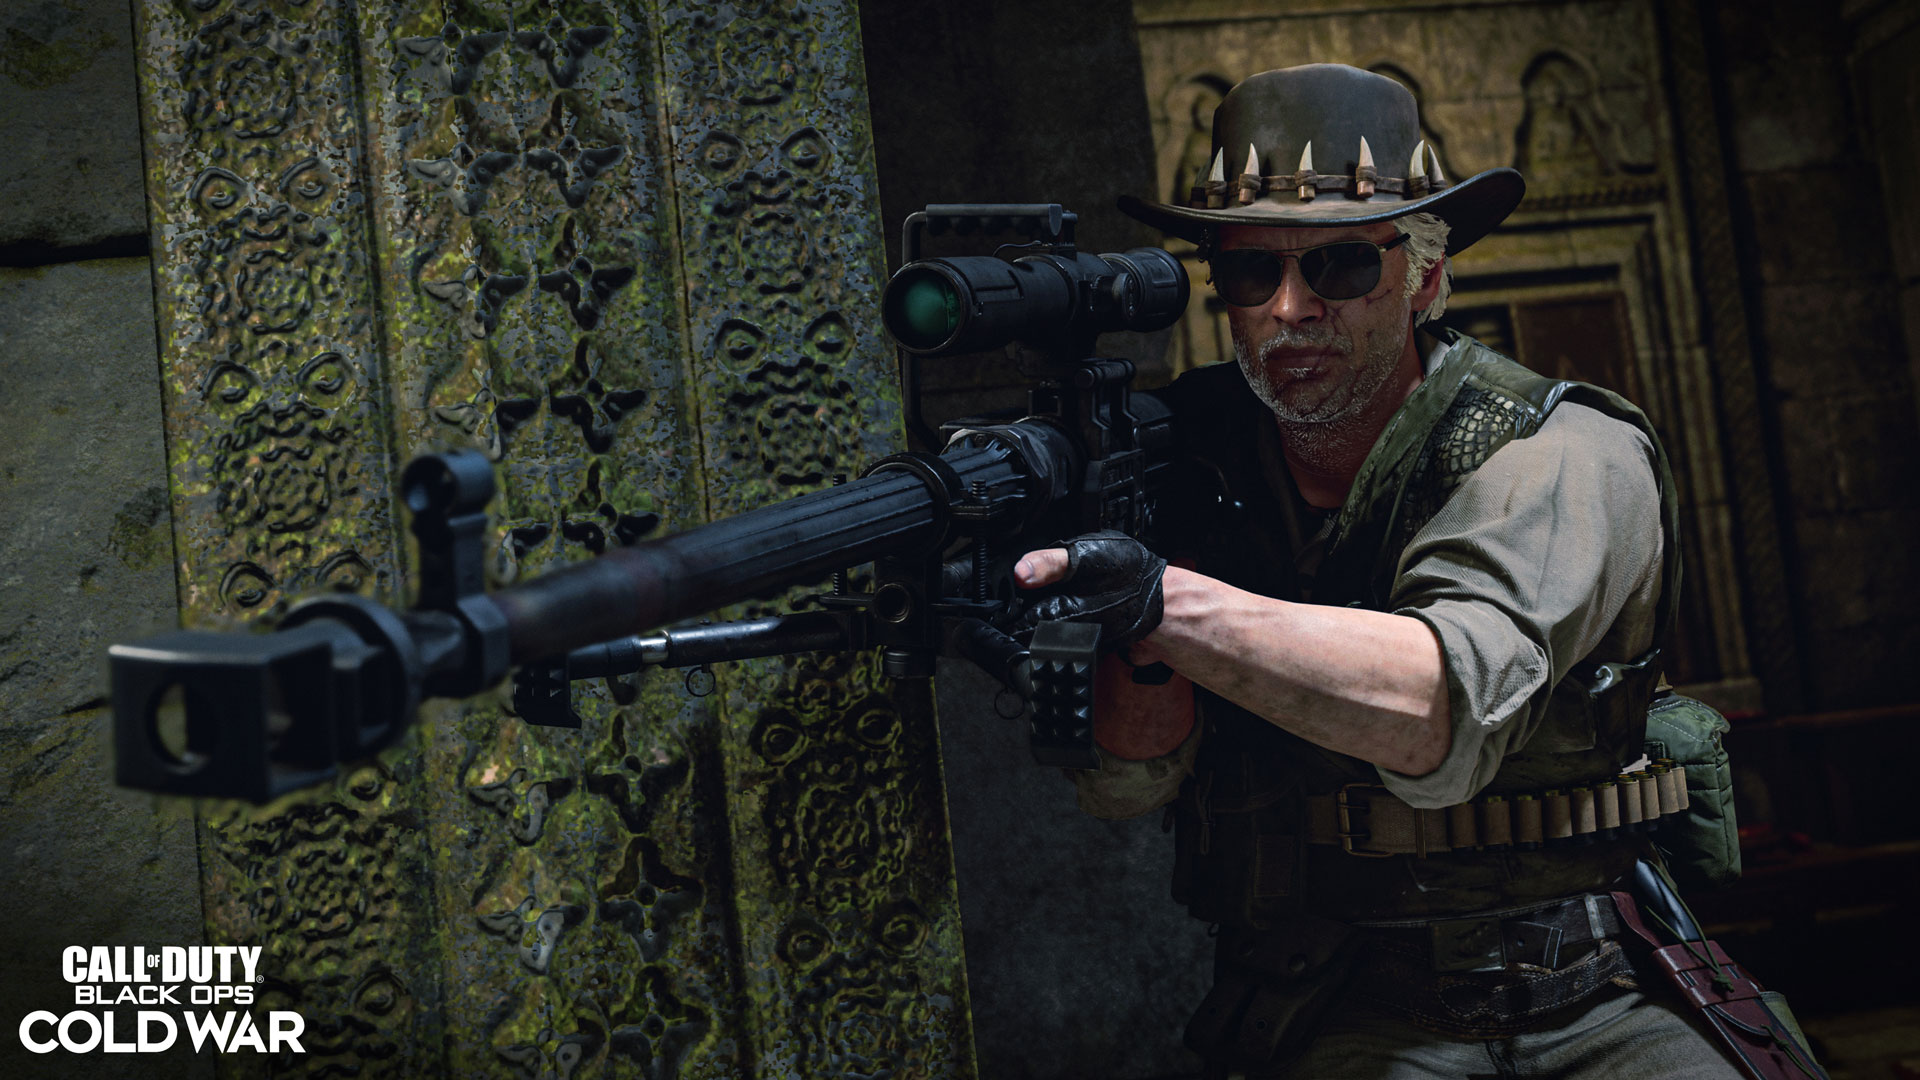 Call of Duty: Mobile - Melhores Rifles de Assalto do jogo - Critical Hits